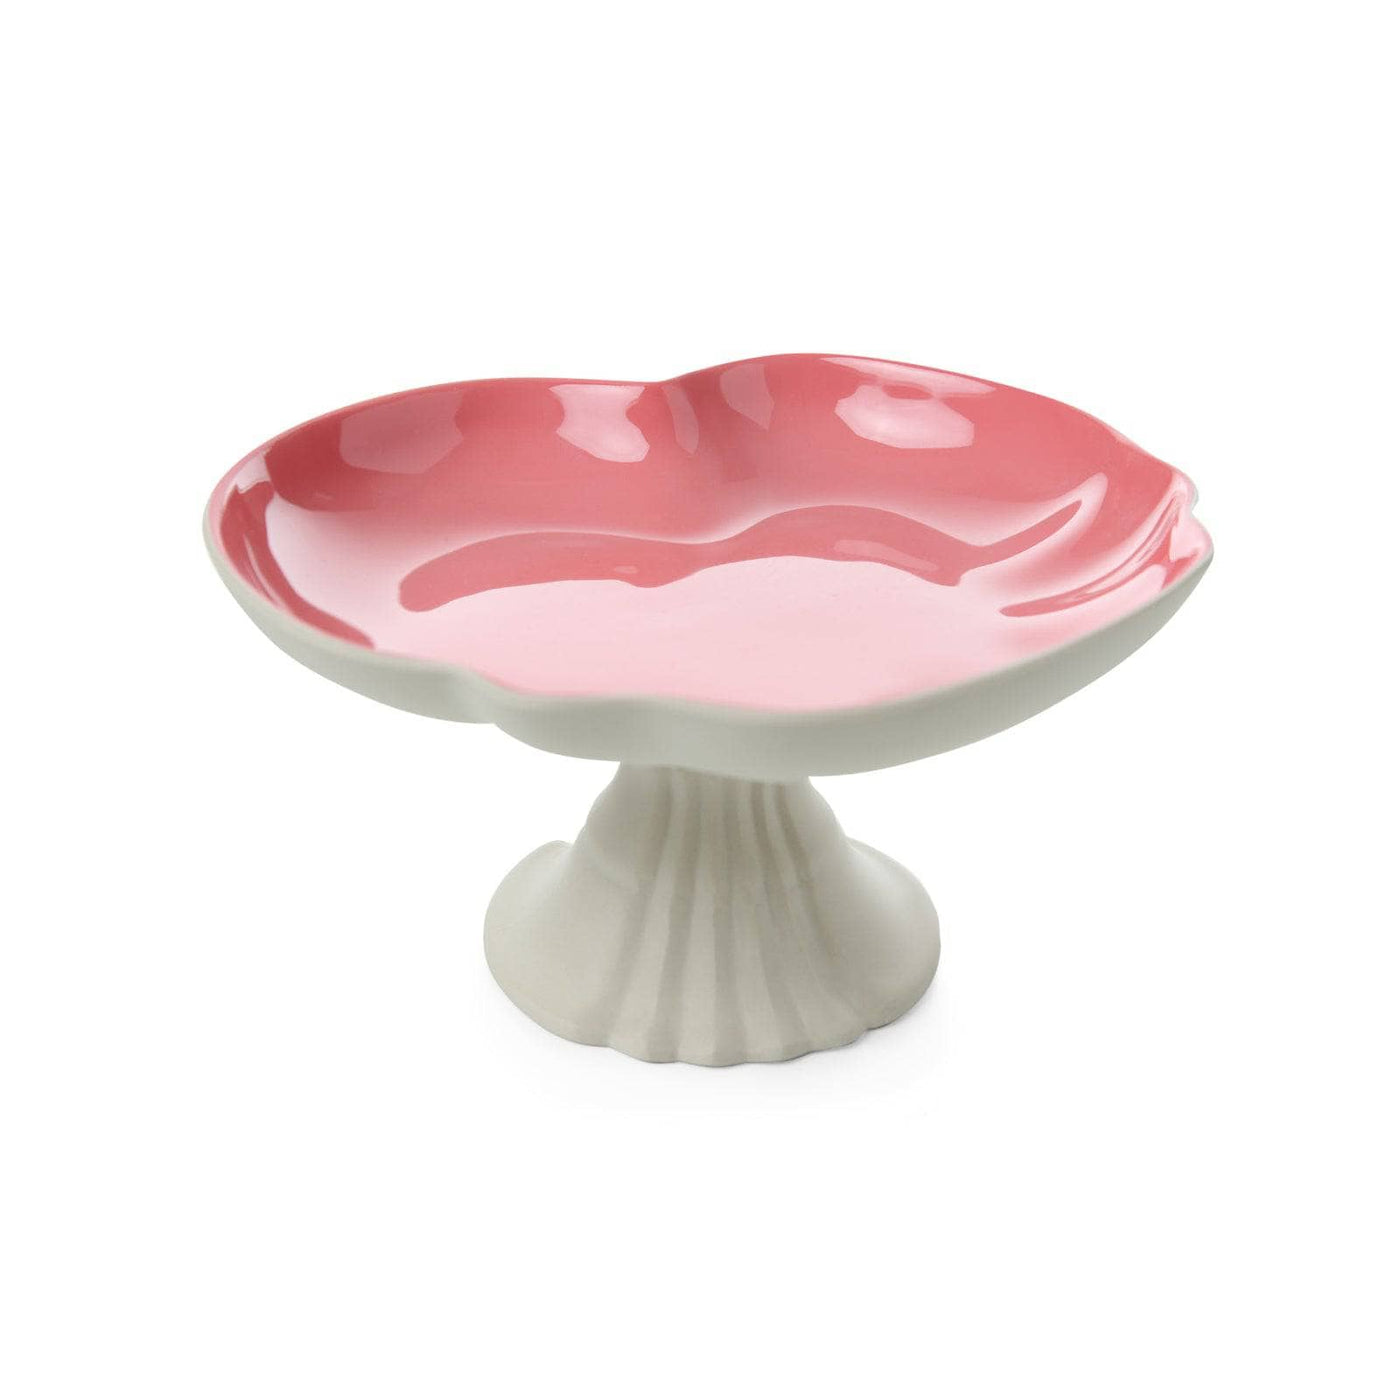 Venus Footed Serving Platter, Beige - Coral Stands & Serving Platters sazy.com